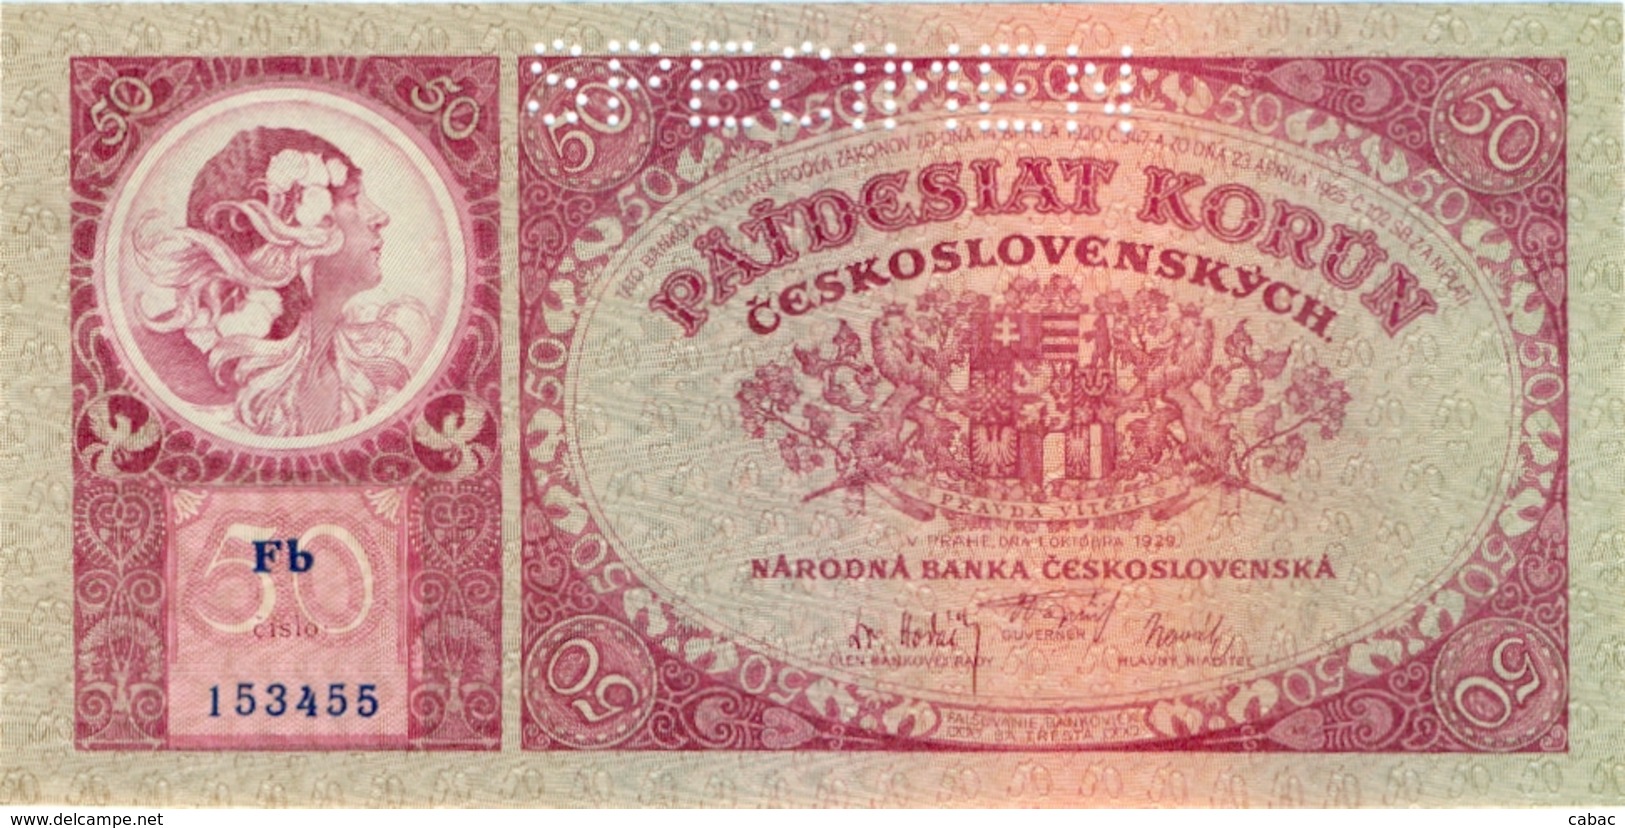 Czechoslovakia, 50 Korun, 1929, SPECIMEN,  Narodna Banka Češkoslovenska, Patdesiat Korun, Kronen, Pravda Vitezi, čislo - Czechoslovakia